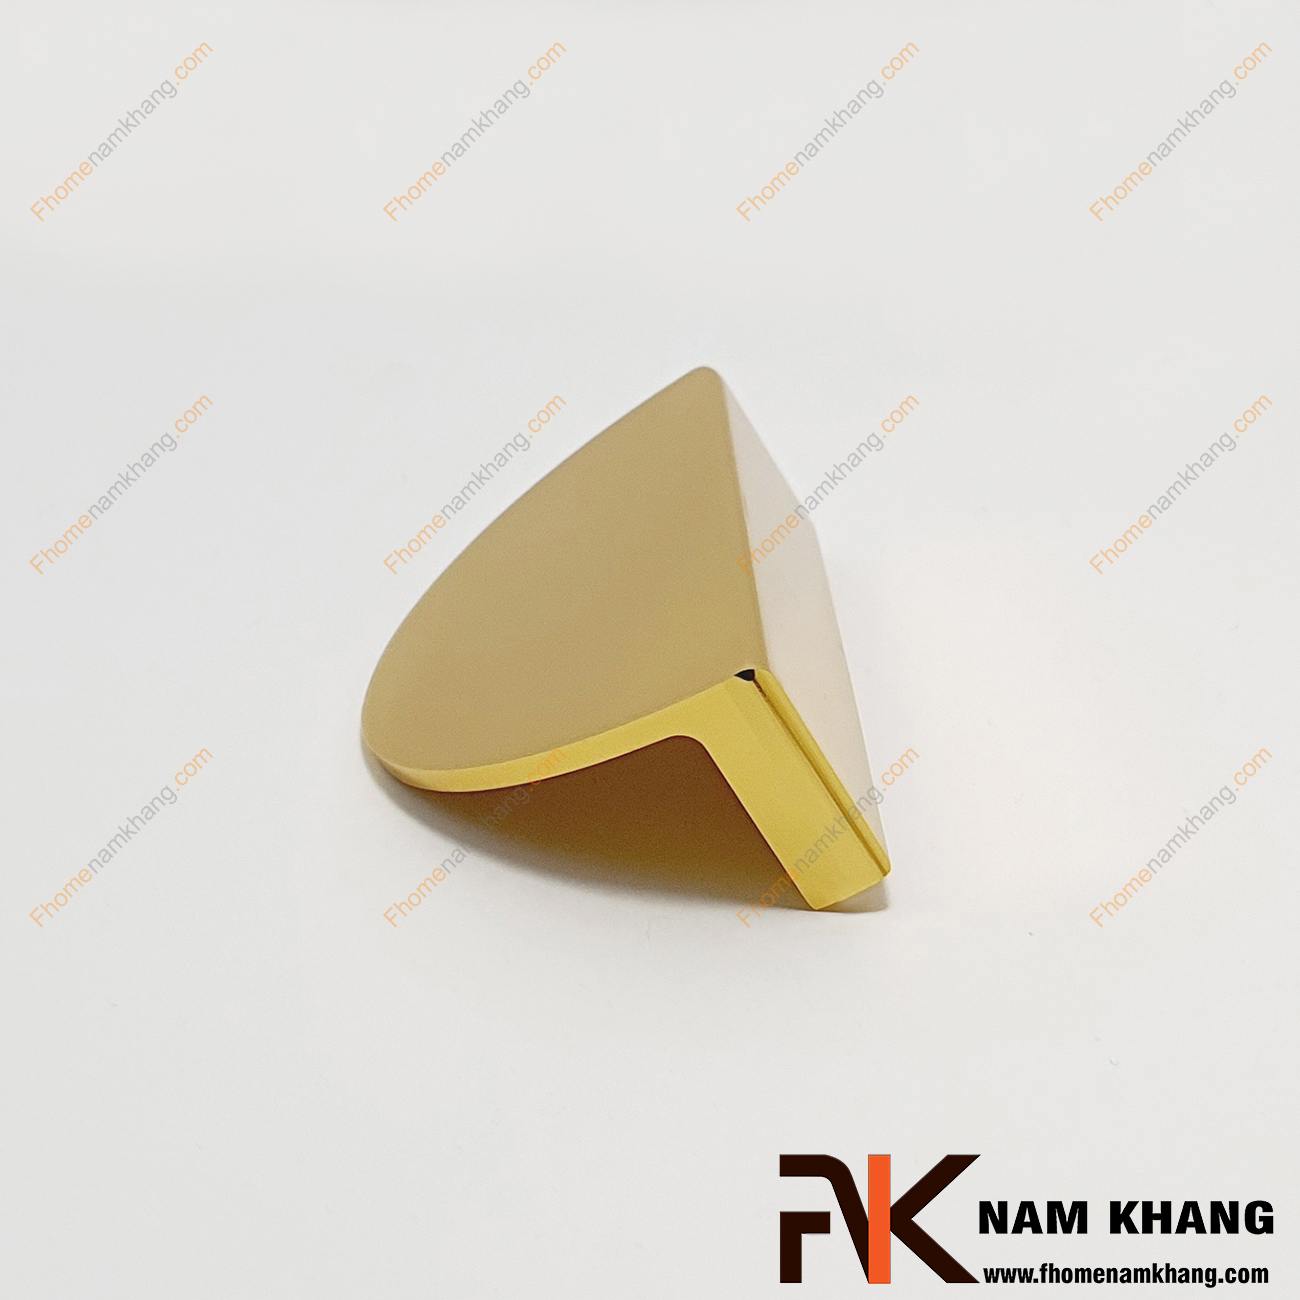 Tay nắm tủ dạng bán nguyệt màu vàng xước ánh kim NK286BN-64V kiểu dáng tay nắm tủ dạng đôi hình bán nguyệt. Đây là dòng sản phẩm thường sử dụng cặp hoặc tách lẻ có thể lắp đặt trên nhiều chất liệu cửa và không gian khác nhau.